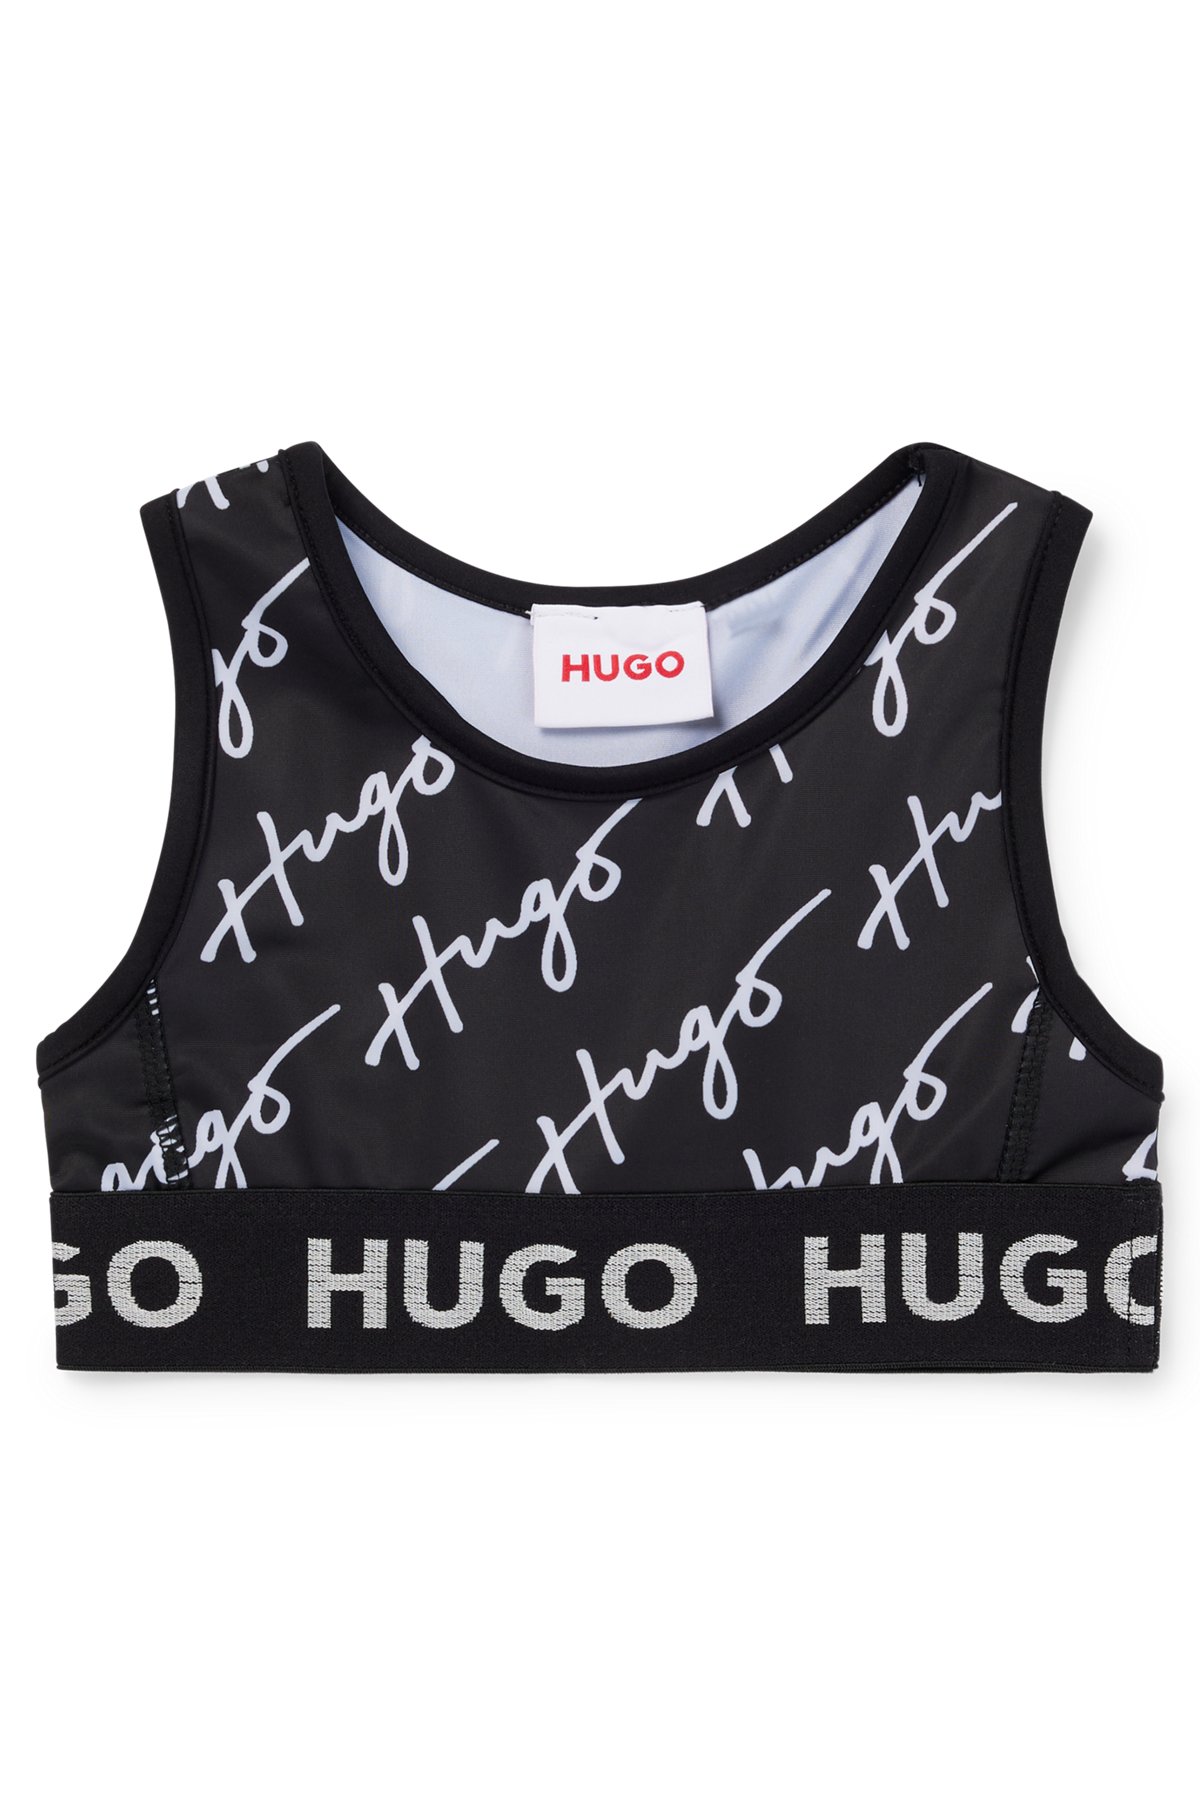 HUGO - Kids' sports bra in stretch jersey with logo details